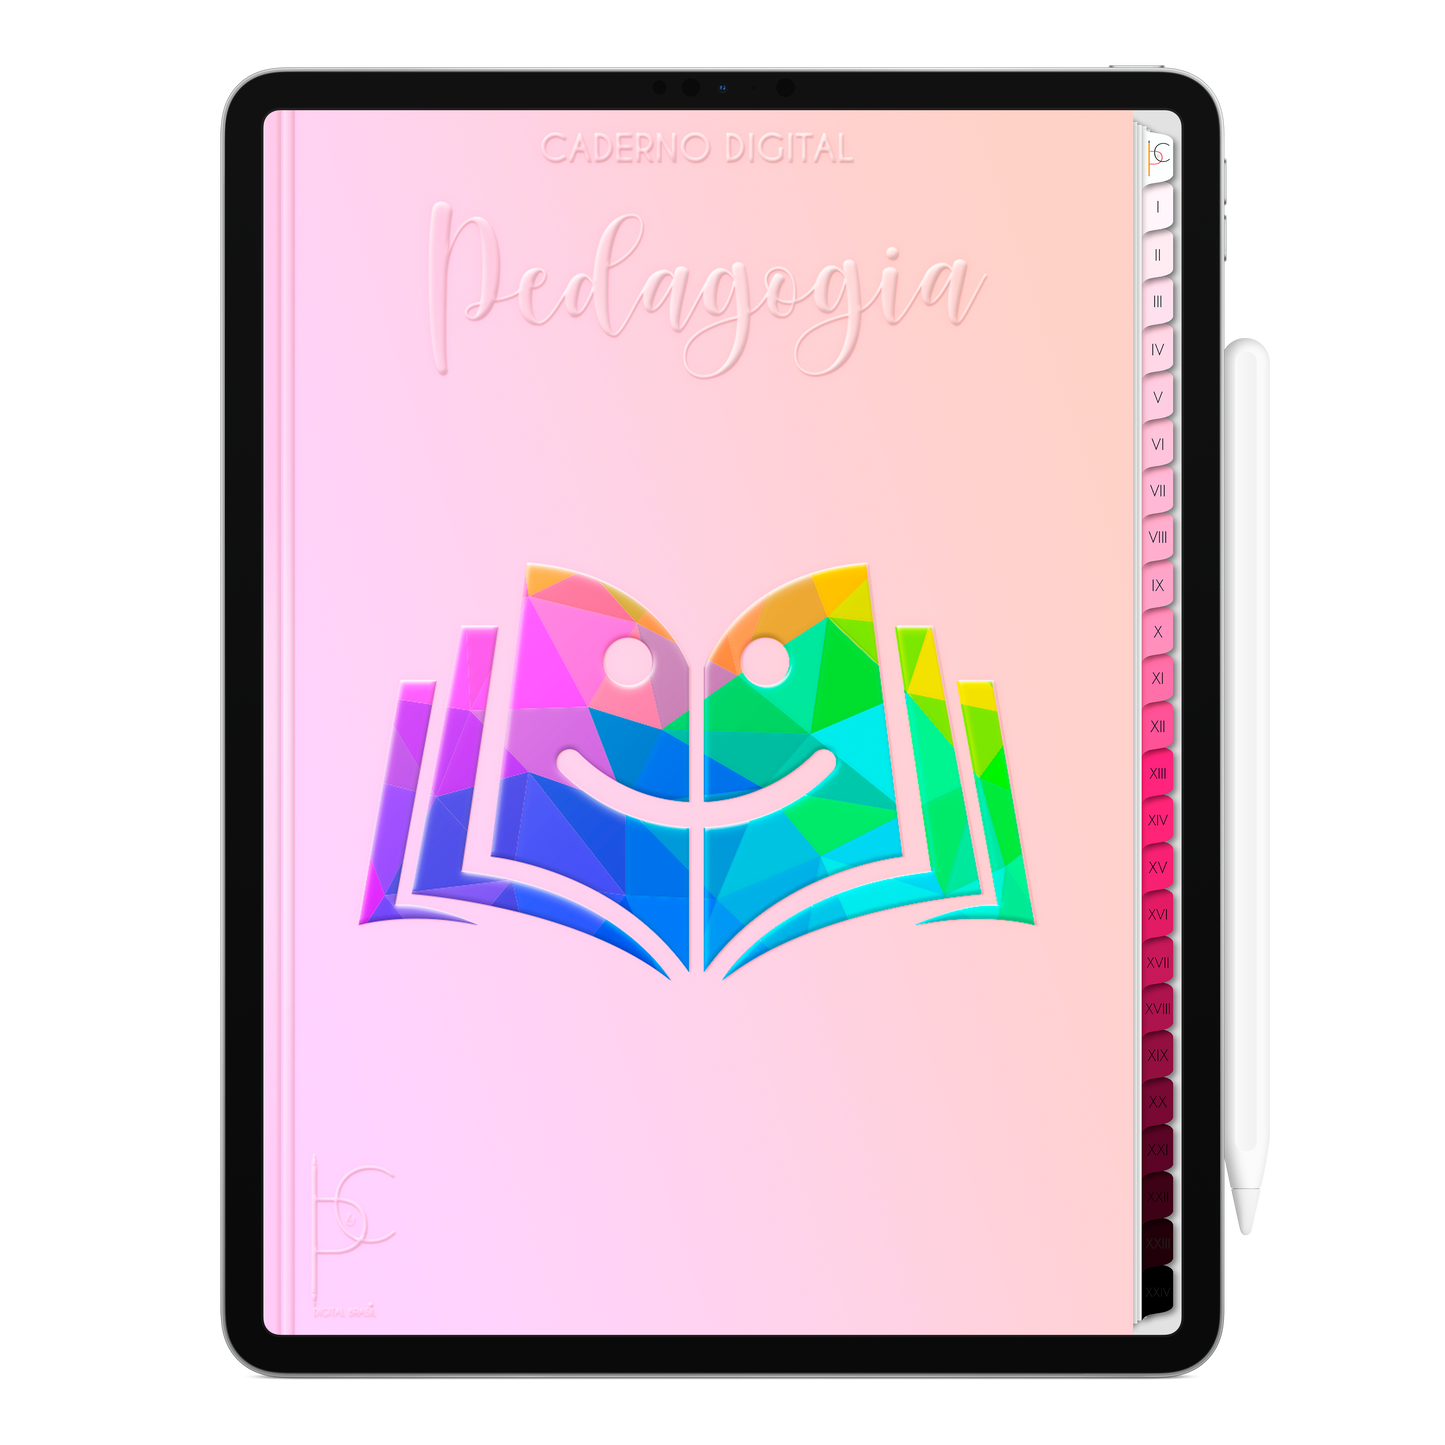 Caderno Digital Blush Pedagogia Educação e Transformação 24 Matérias • Para iPad e Tablet Android • Download instantâneo • Sustentável